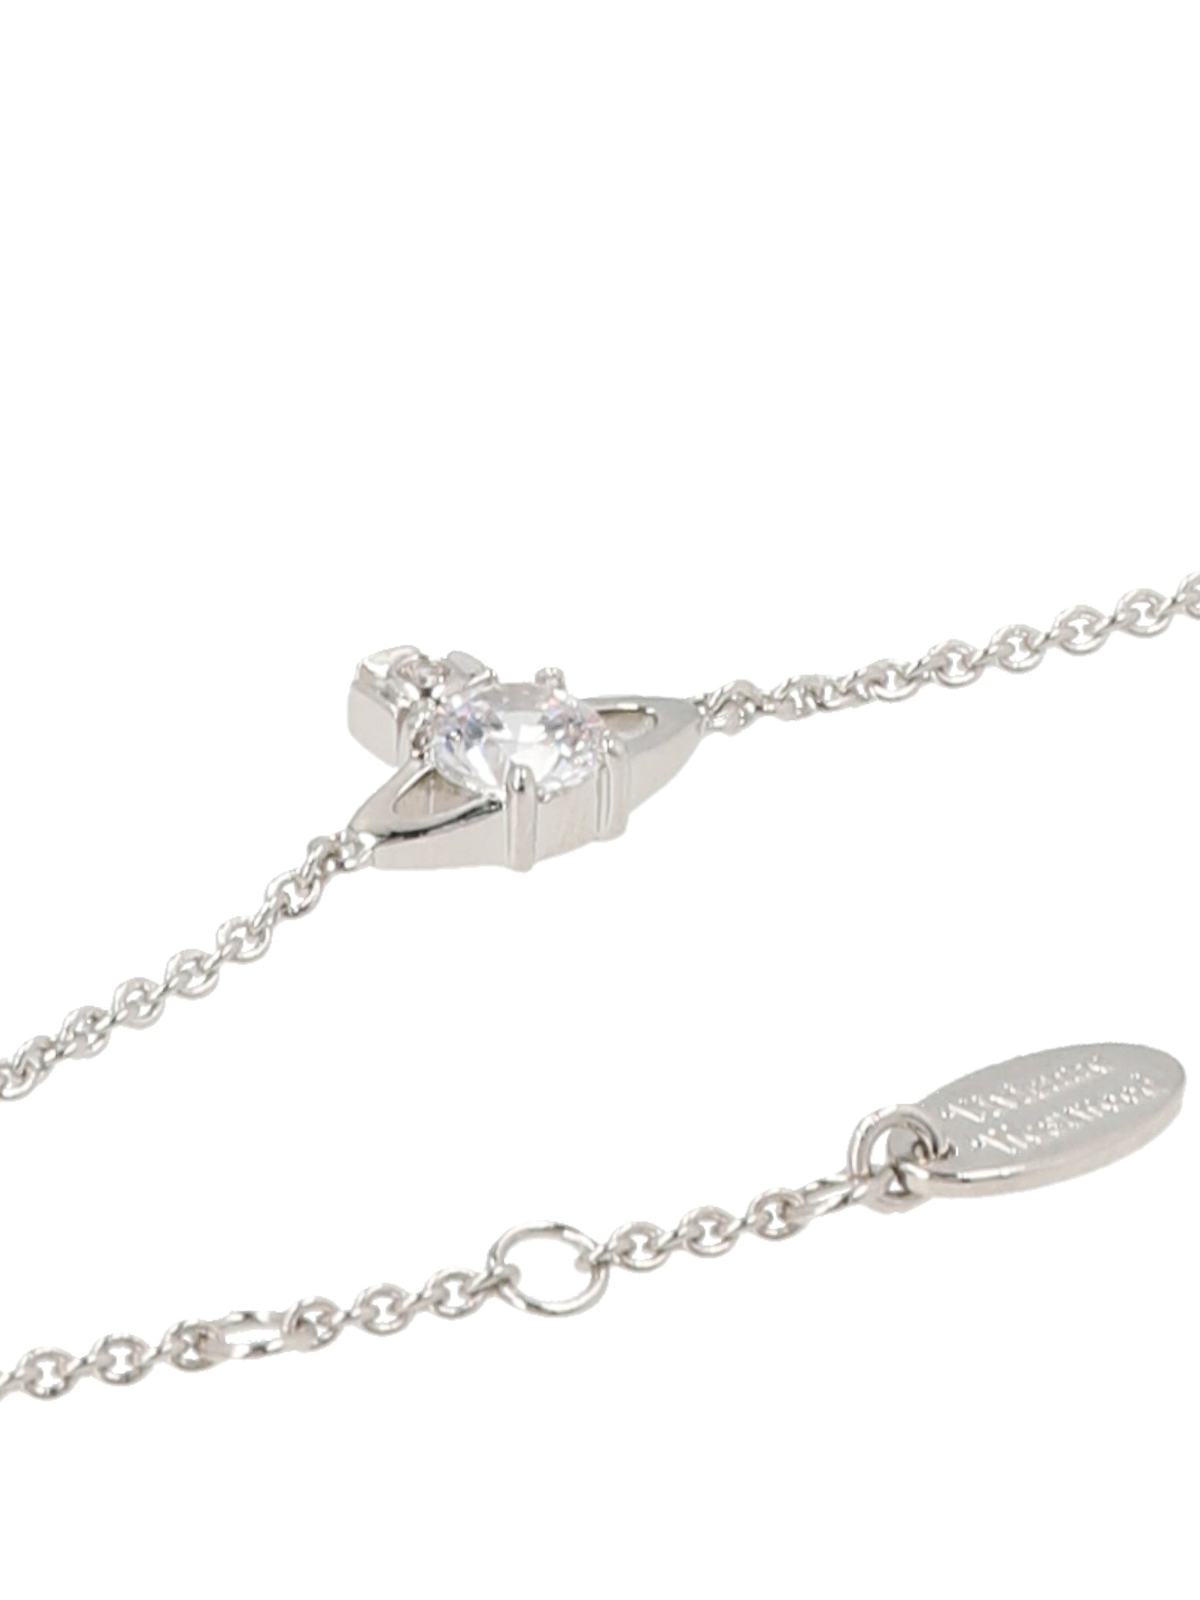 Vivienne Westwood Rhodium Lucrece Safety Pin Bracelet for Women